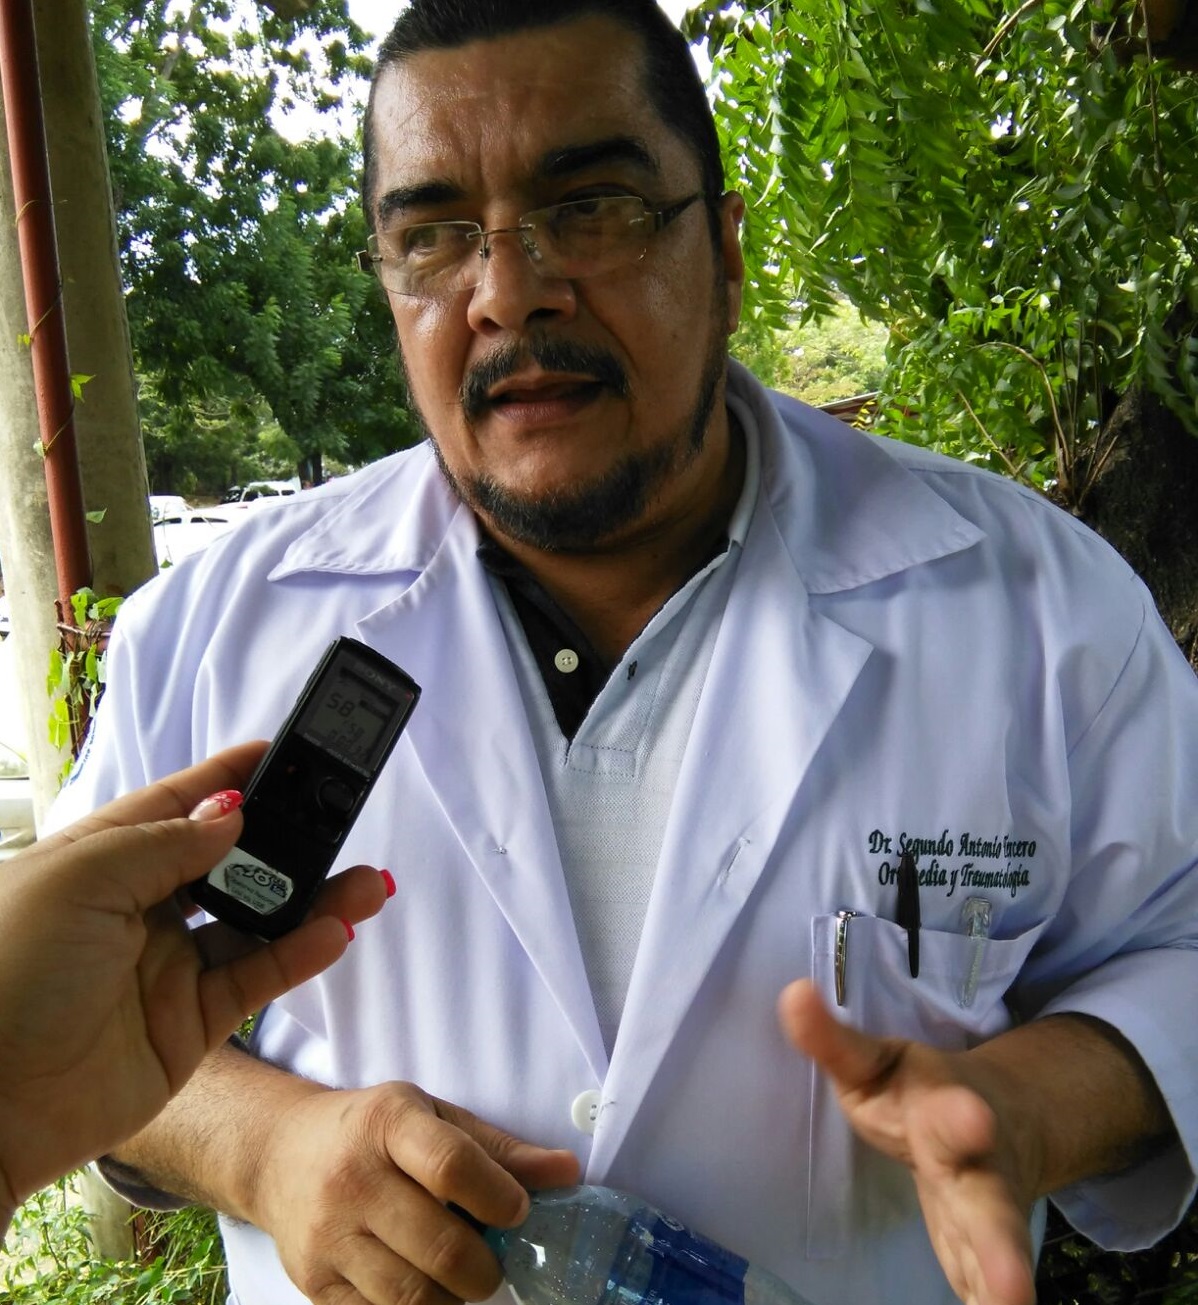 El doctor <b>Segundo Tercero</b>, Director de Salud del hospital Manolo Morales - 20151222120123